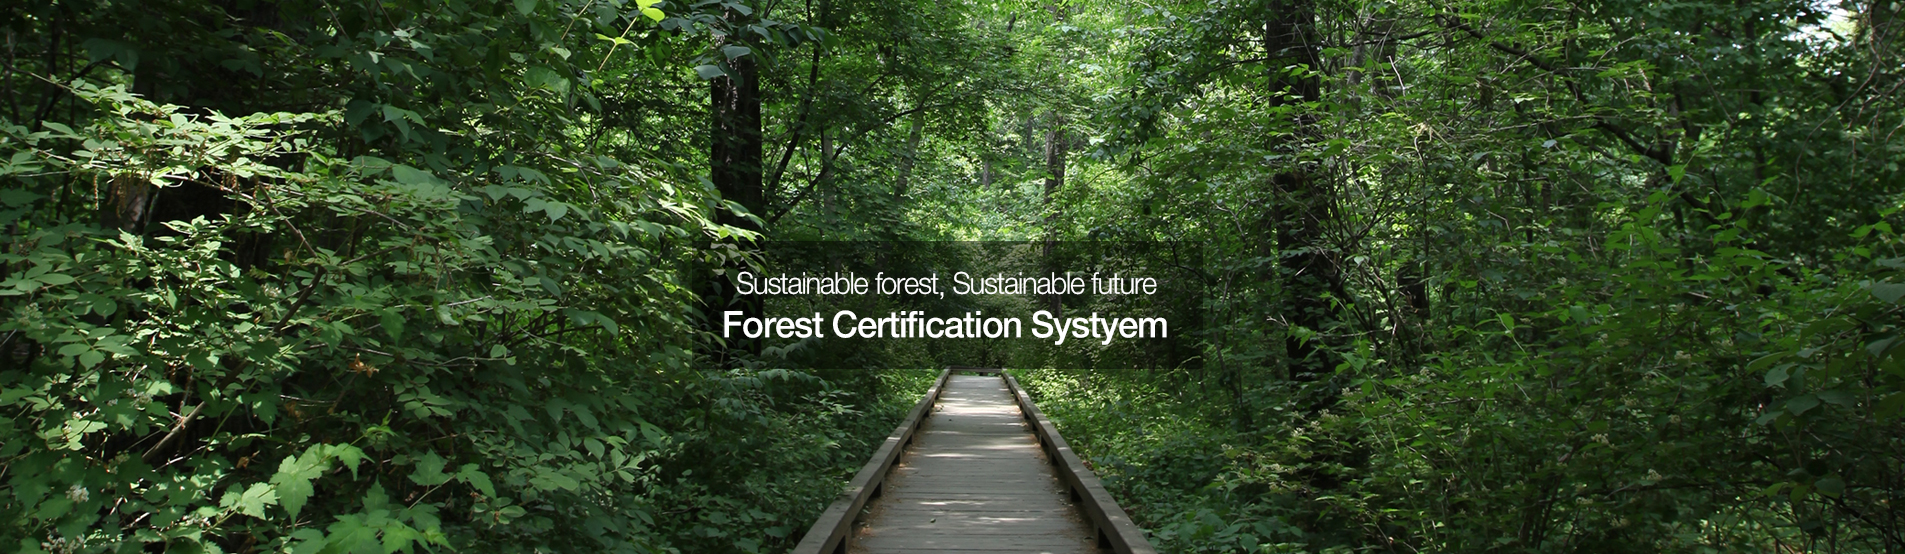 지속가능한 산림, 지속가능한 미래 산림인증제도